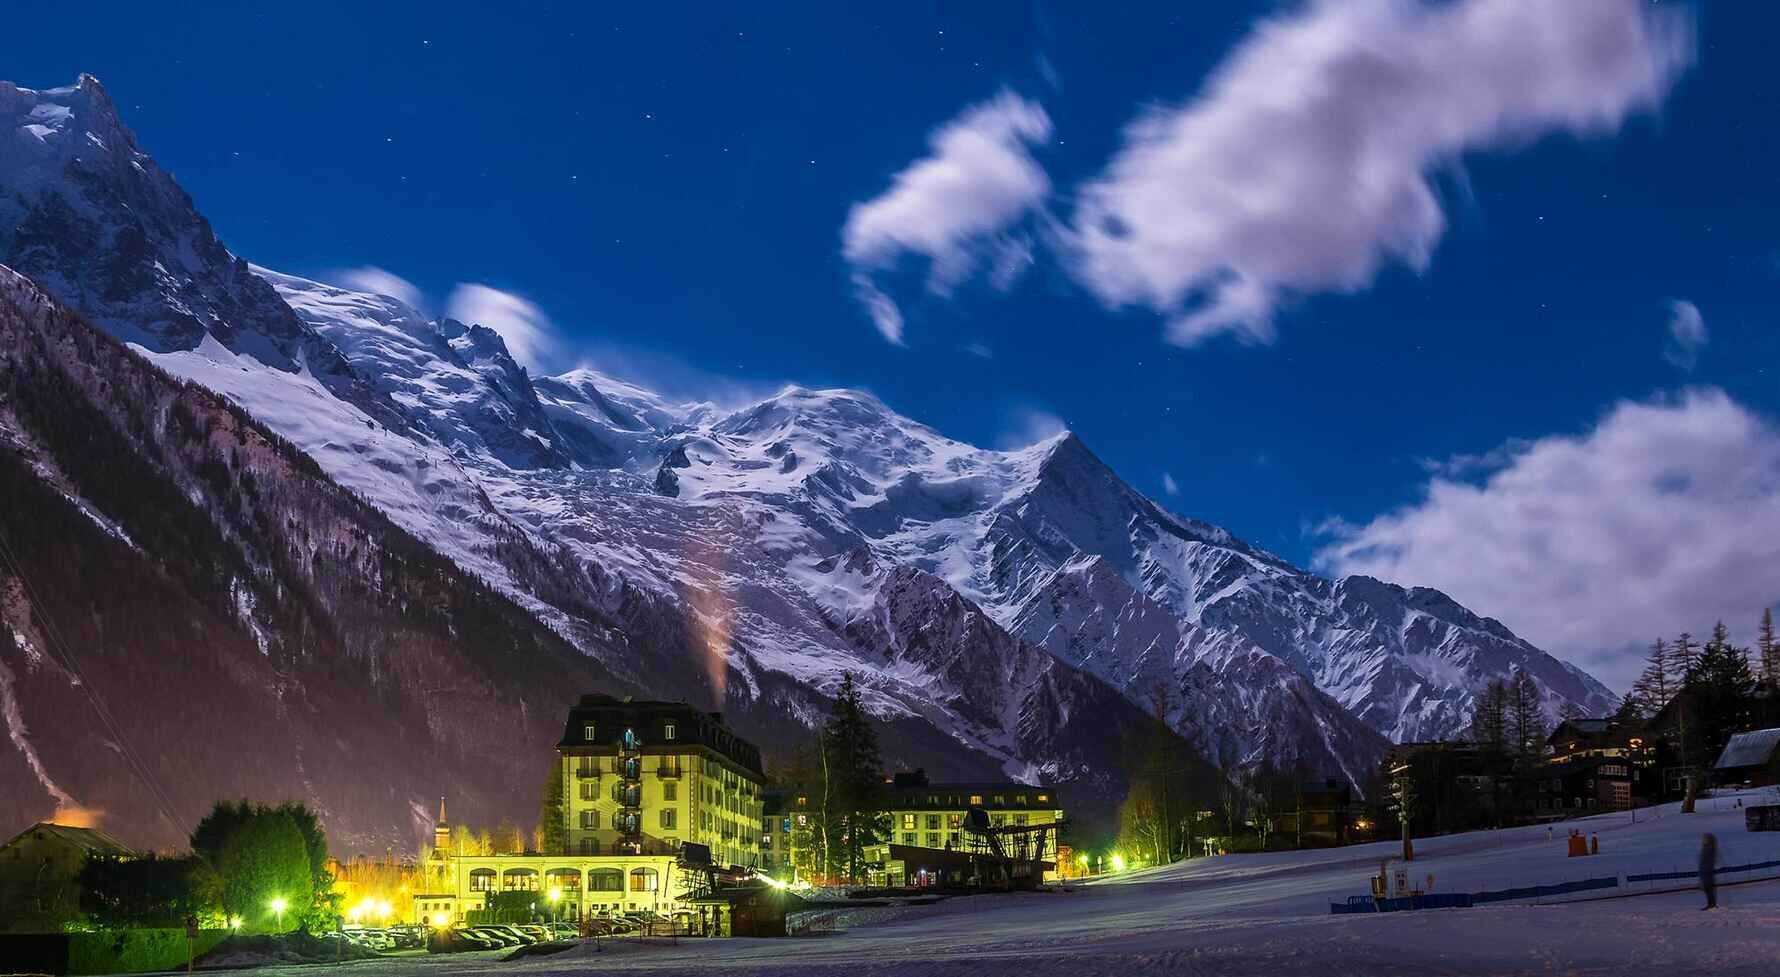 Chamonix Mont Blanc Ski resort at night